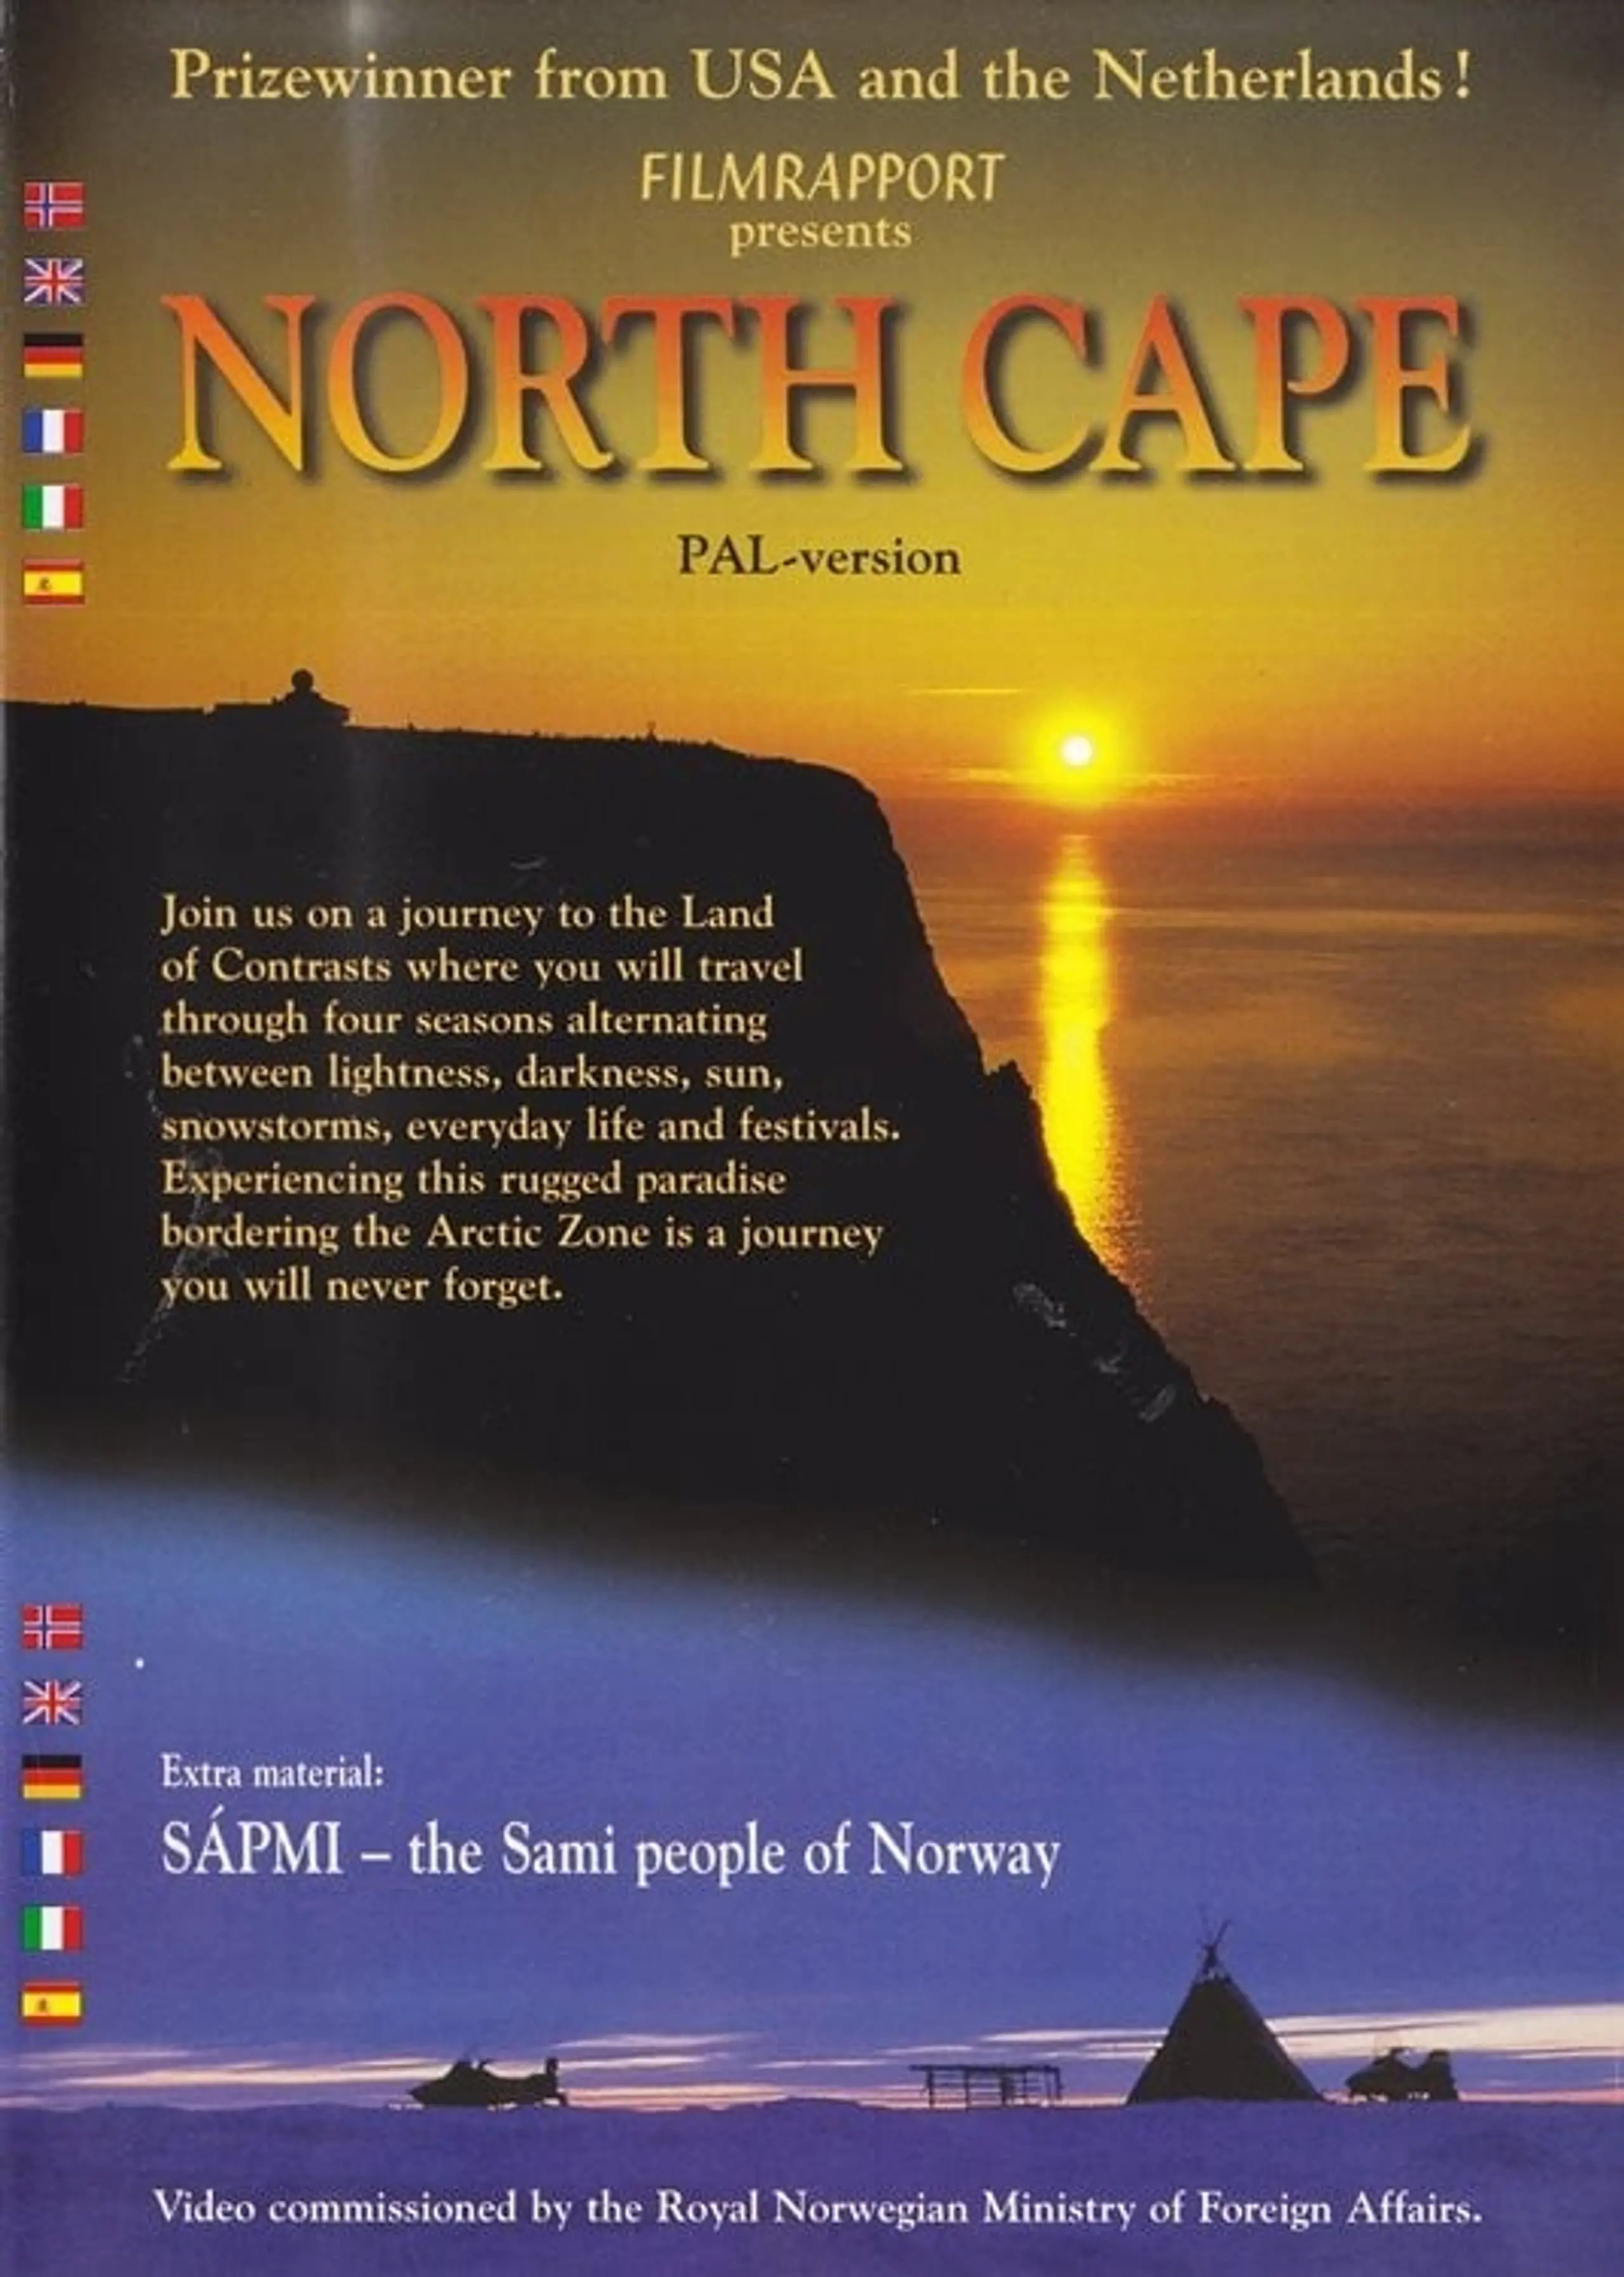 North Cape